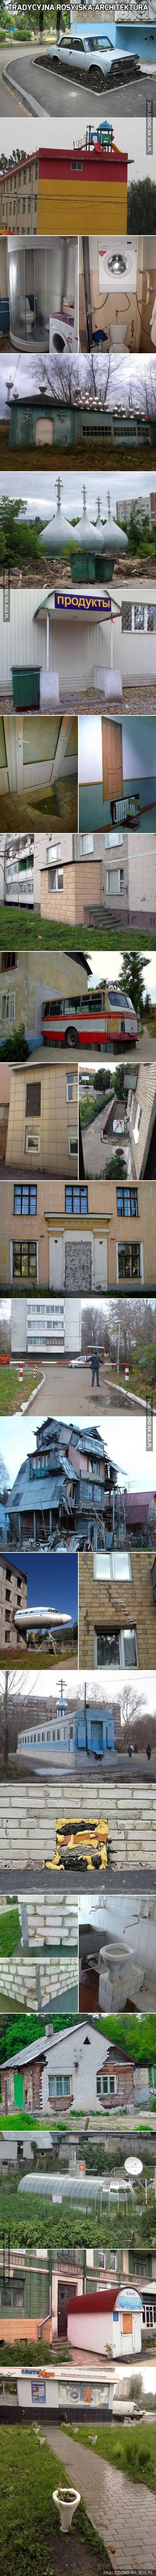 Tradycyjna rosyjska architektura